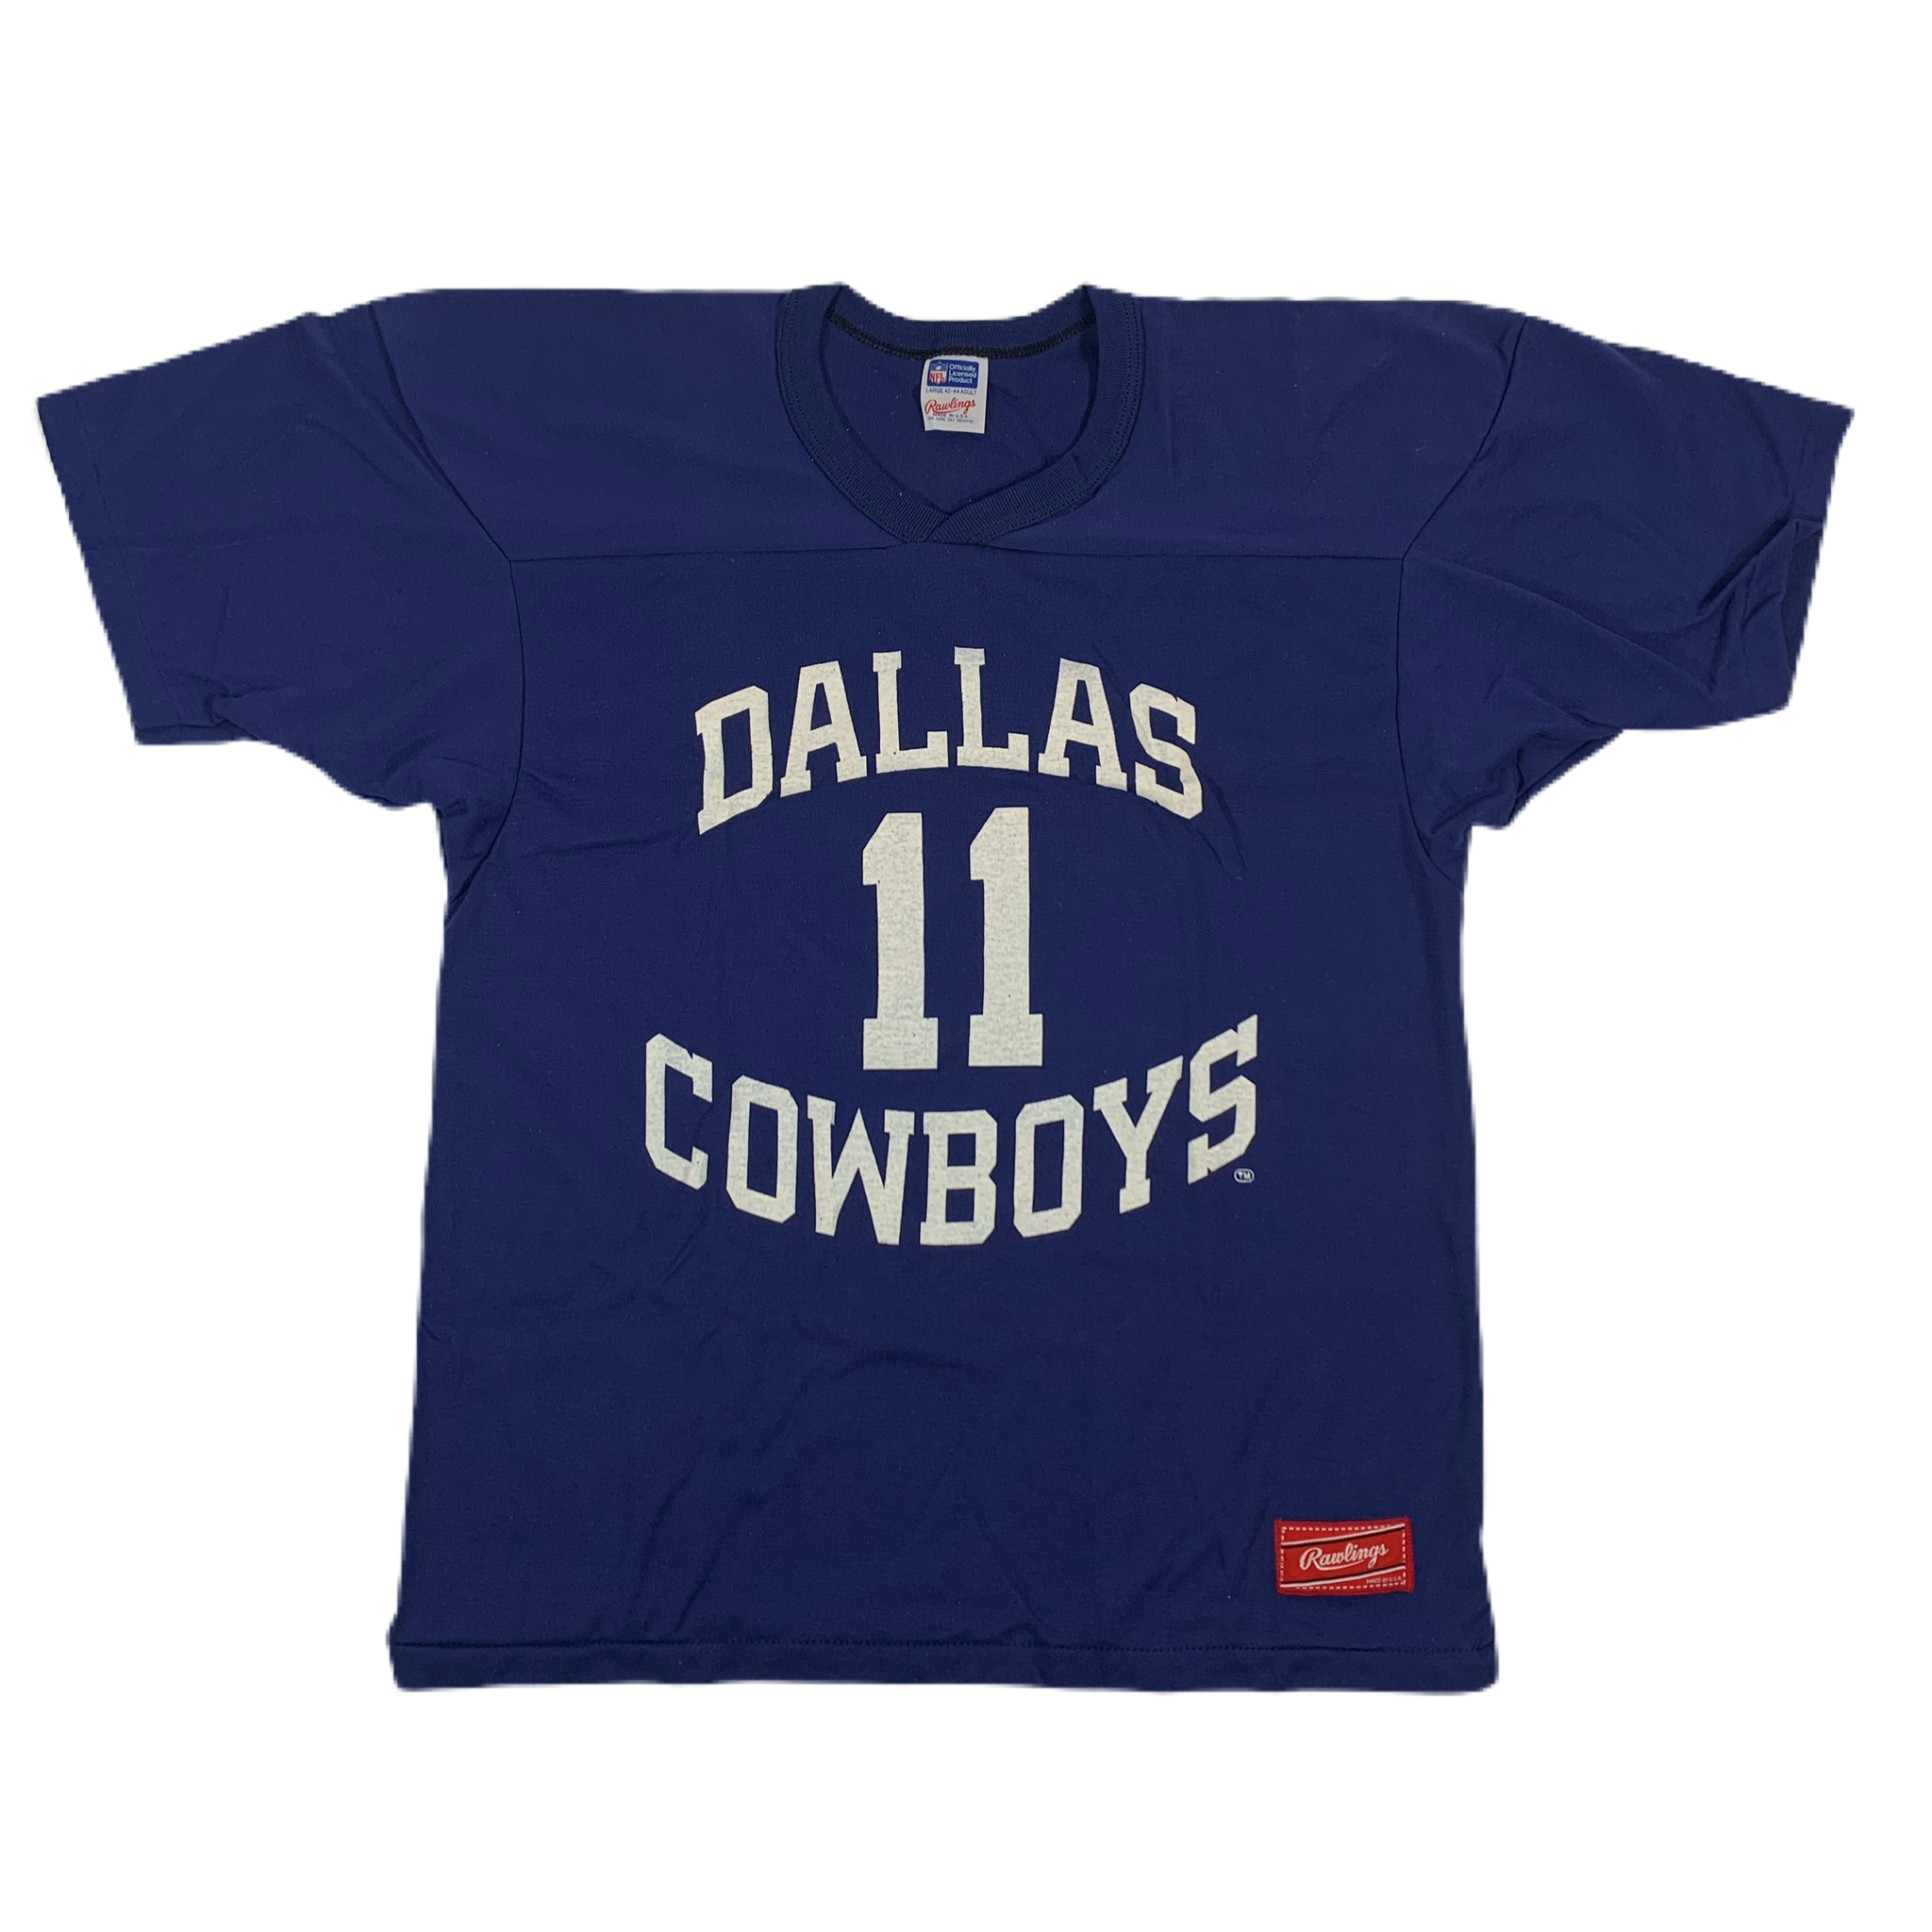 Dallas Cowboys Apparel, Cowboys Gear, & Official Dallas Cowboys Merchandise  at NFL Shop